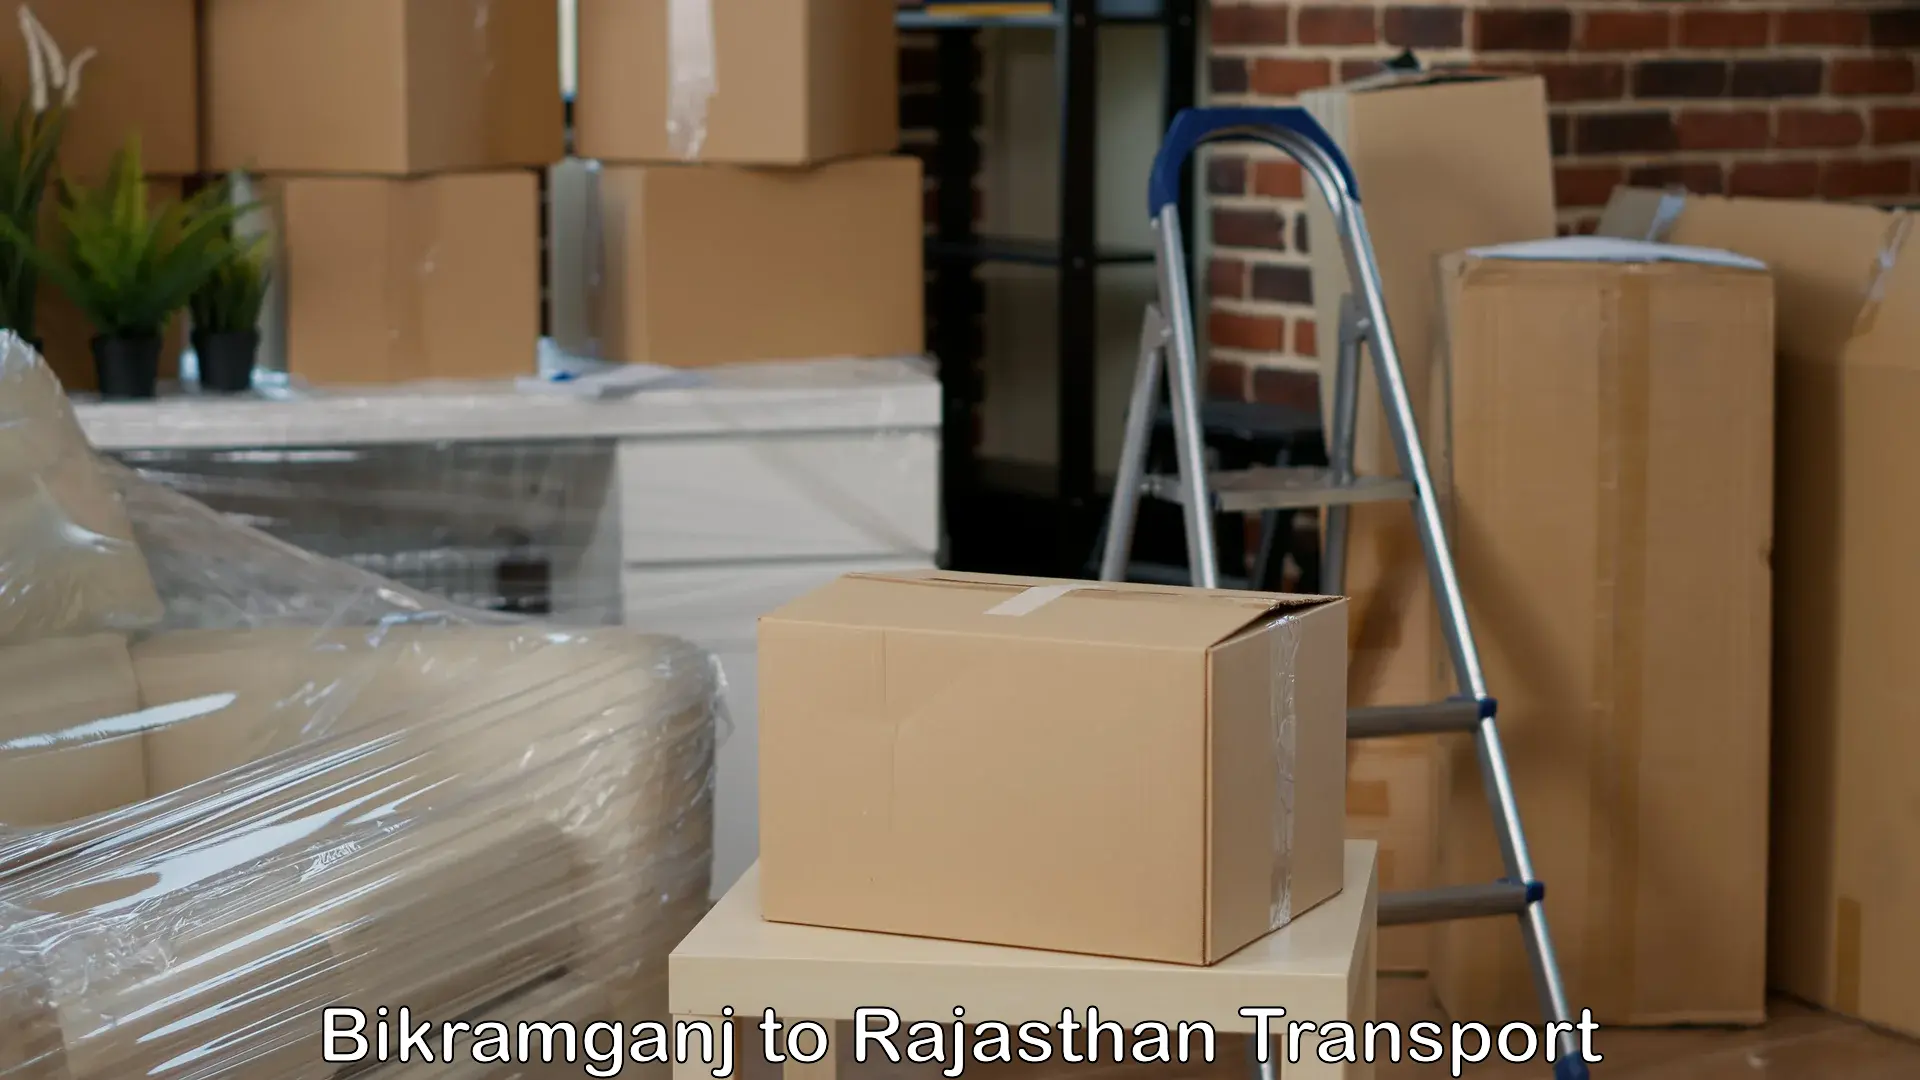 Package delivery services Bikramganj to Jhunjhunu